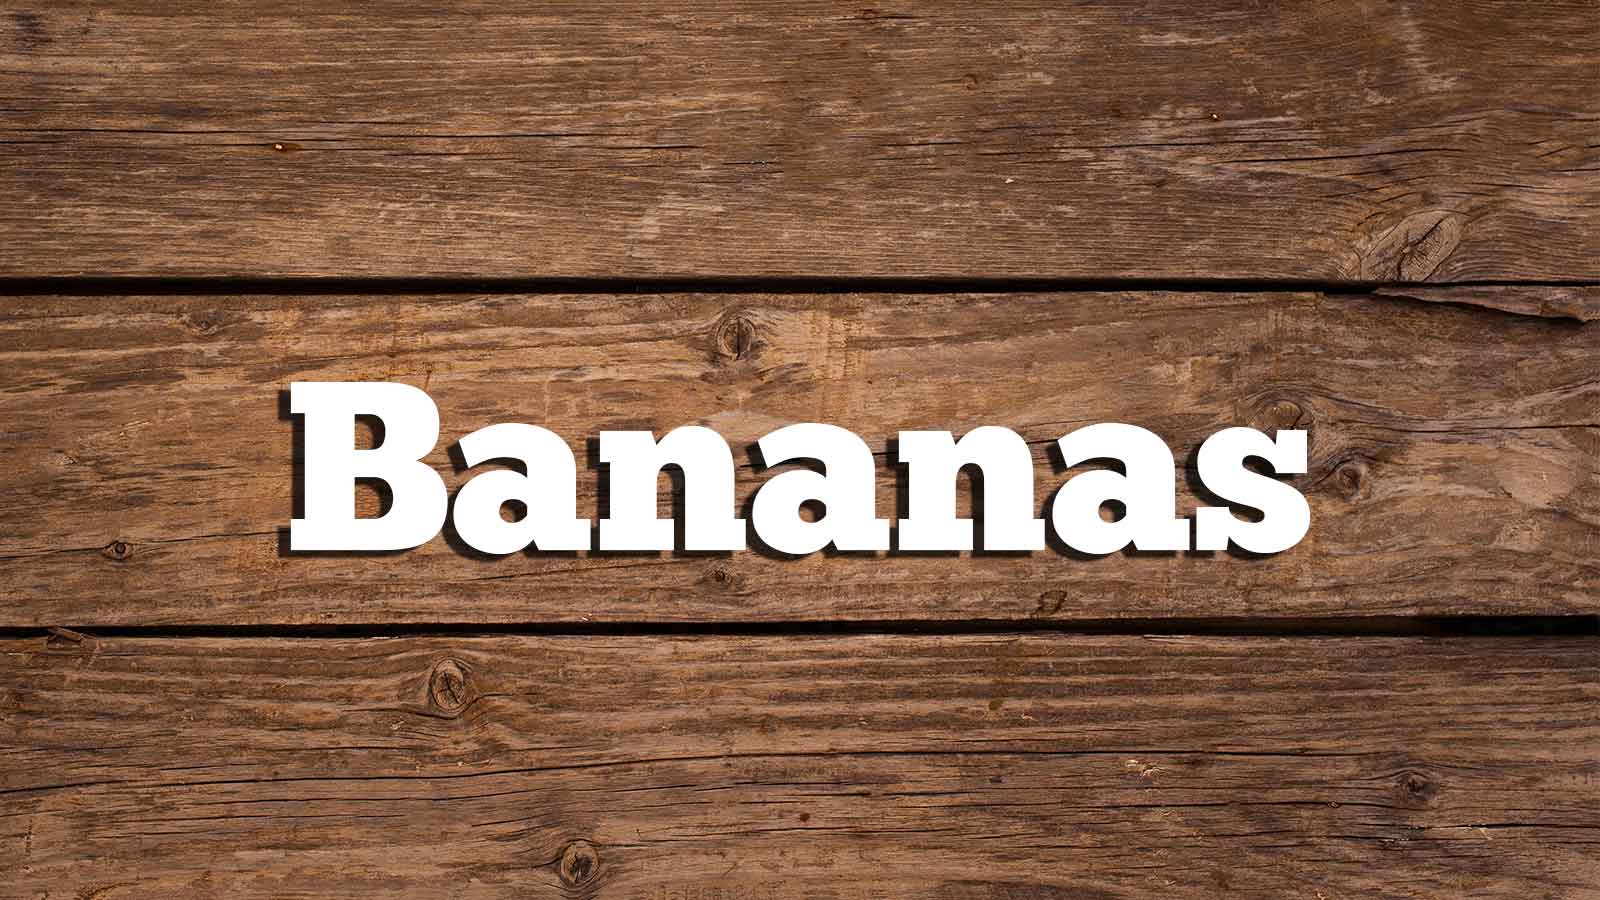 Text Bananas